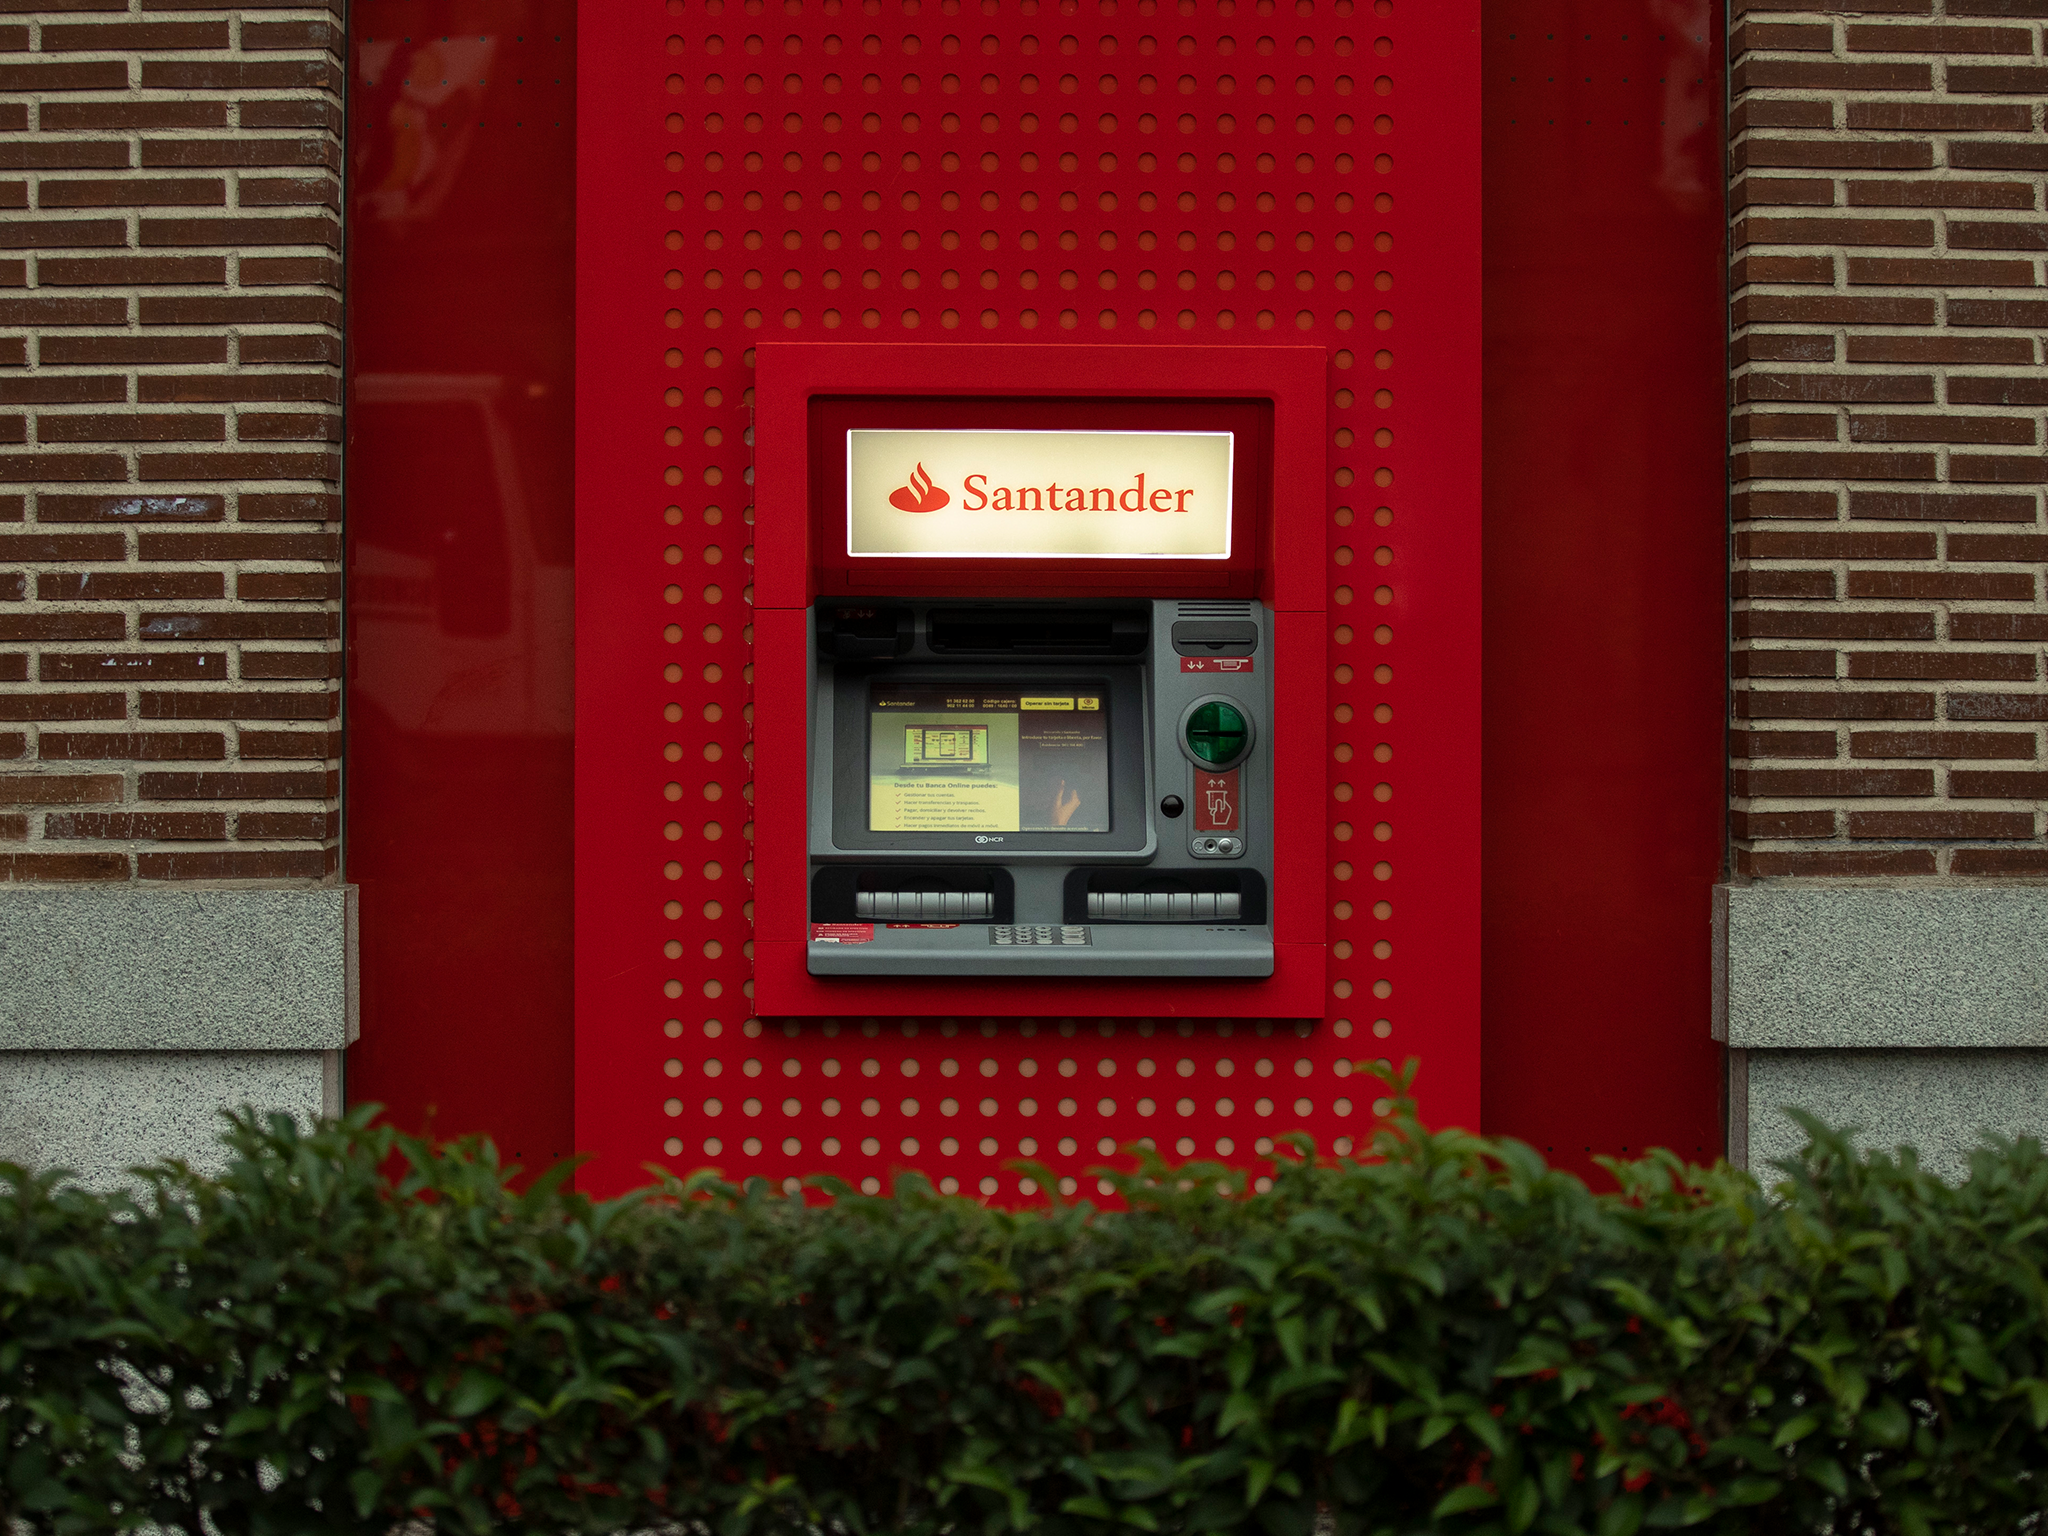 Santander caído: Clientes de la banca online no pueden acceder al sitio web